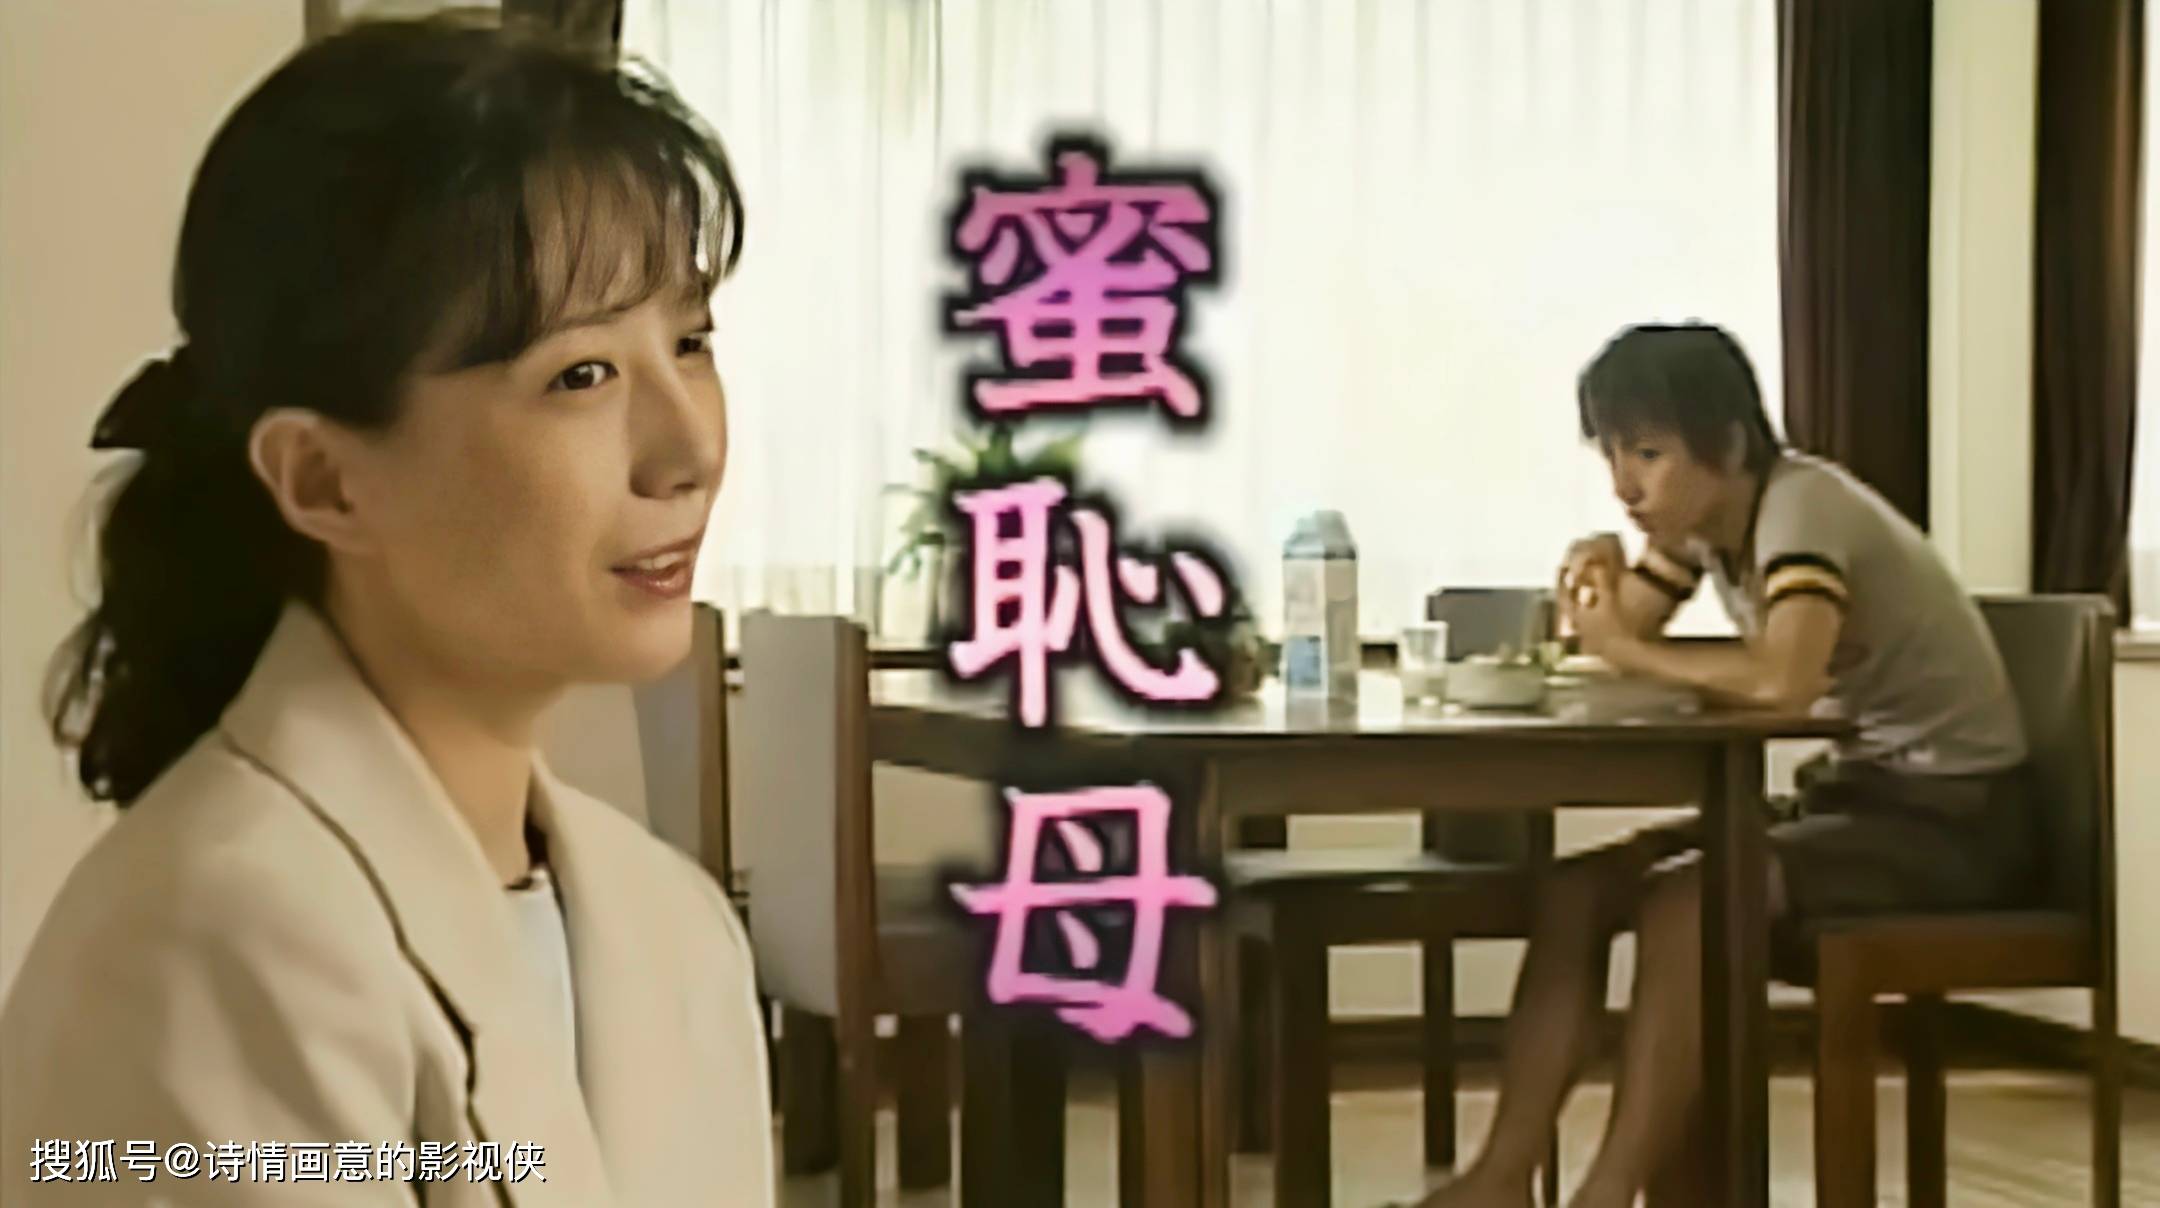 日本伦理电影《蜜耻母》:禁忌边缘的情感漩涡,人性与伦理的深刻质问